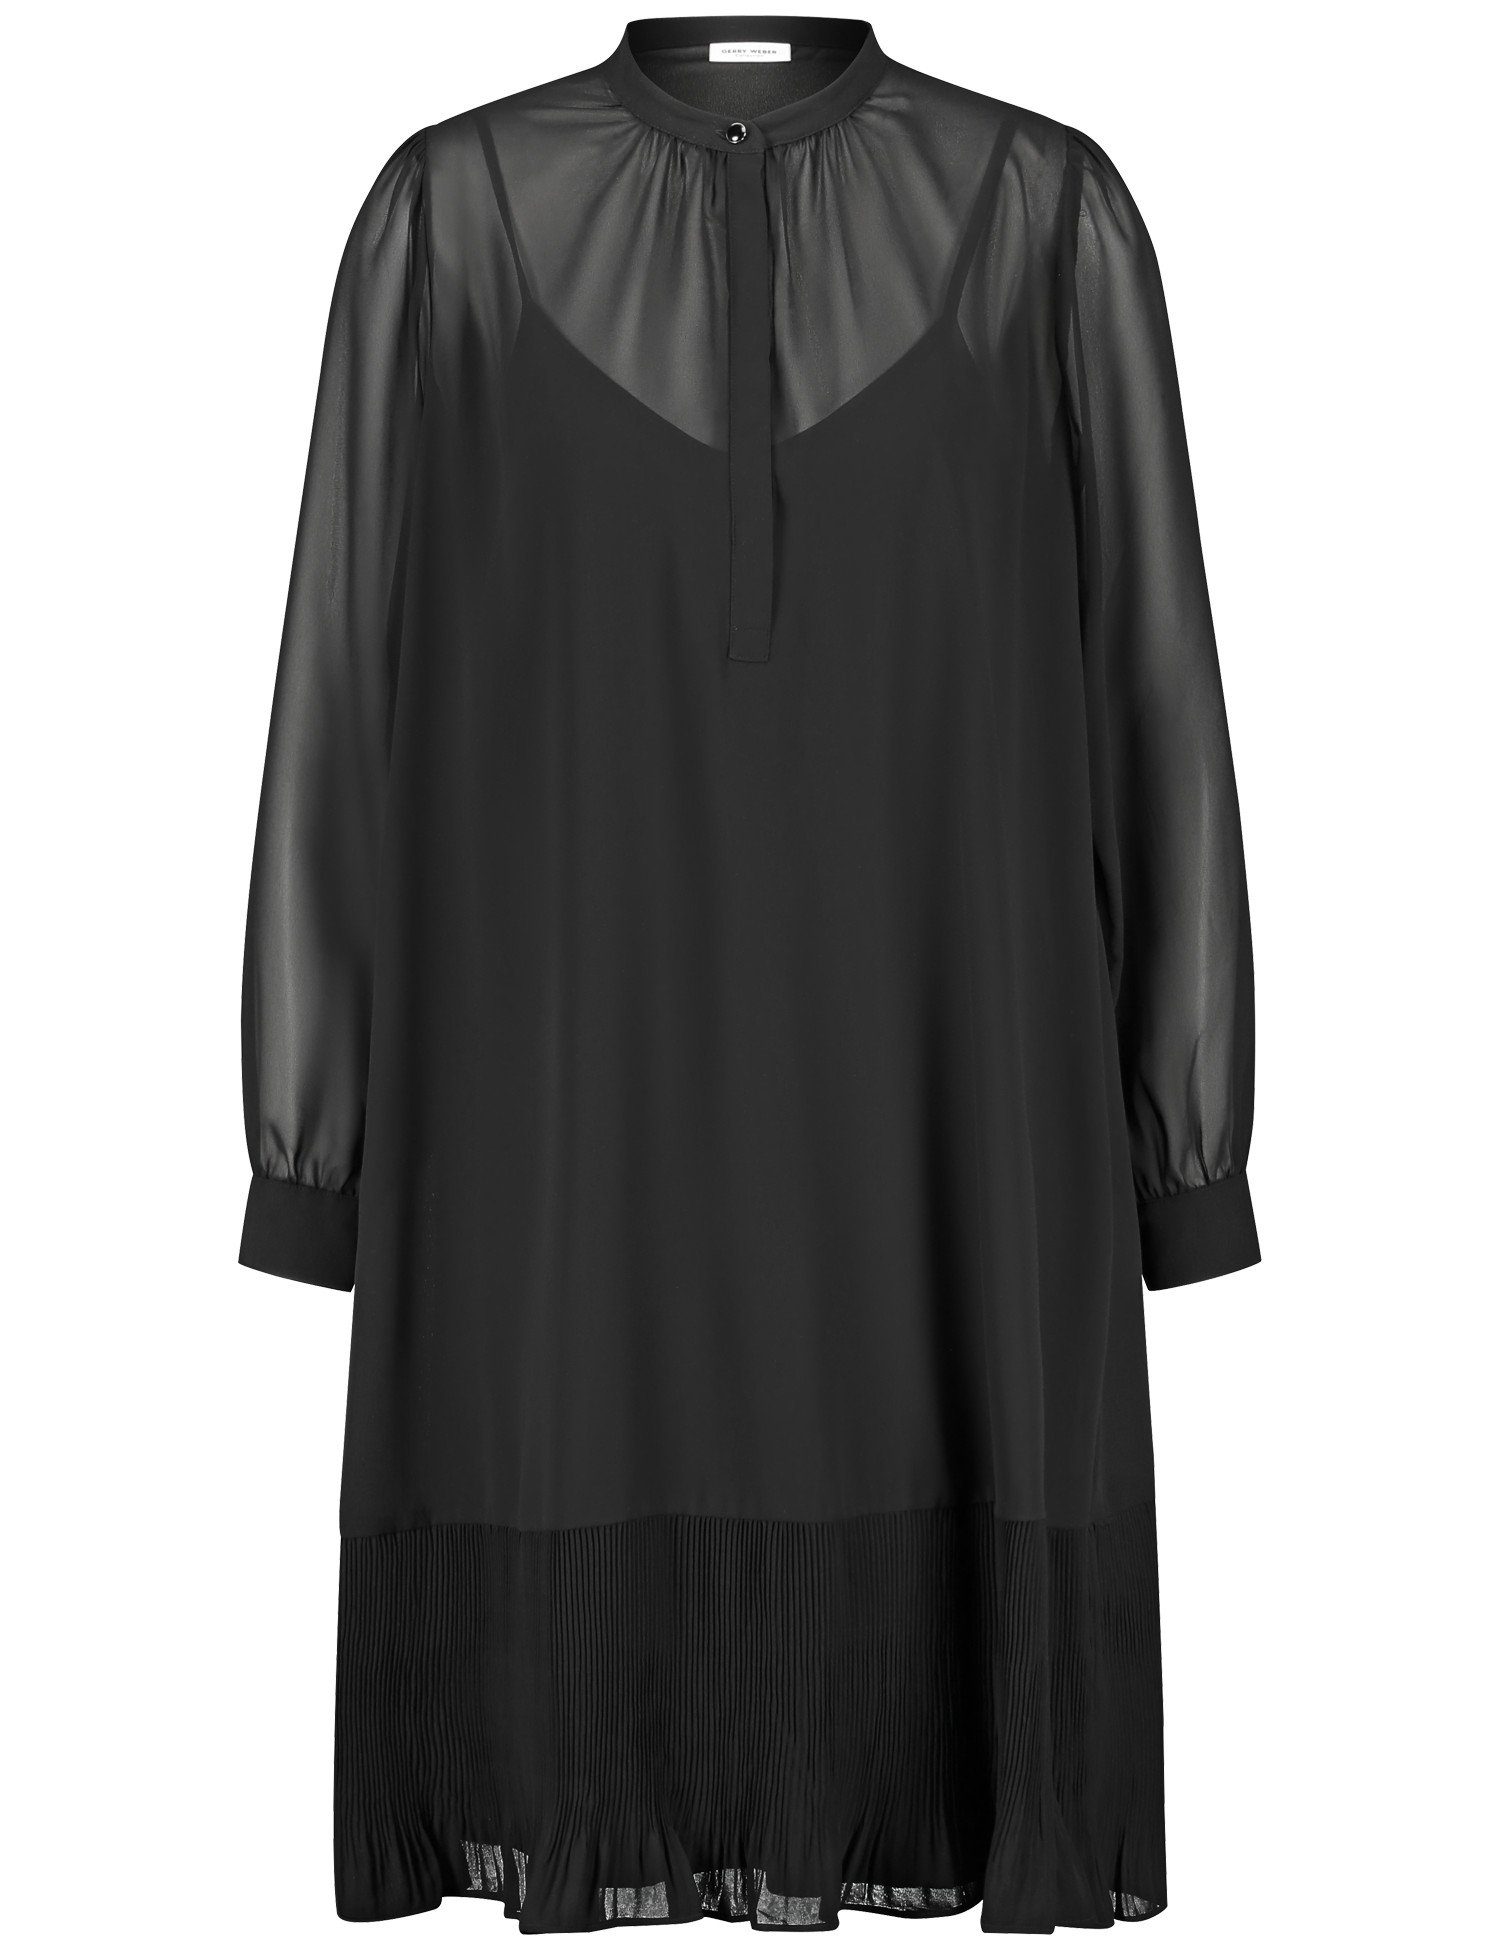 GERRY WEBER Midikleid semitransparentem mit Kleid Schwarz Overlayer Zartes